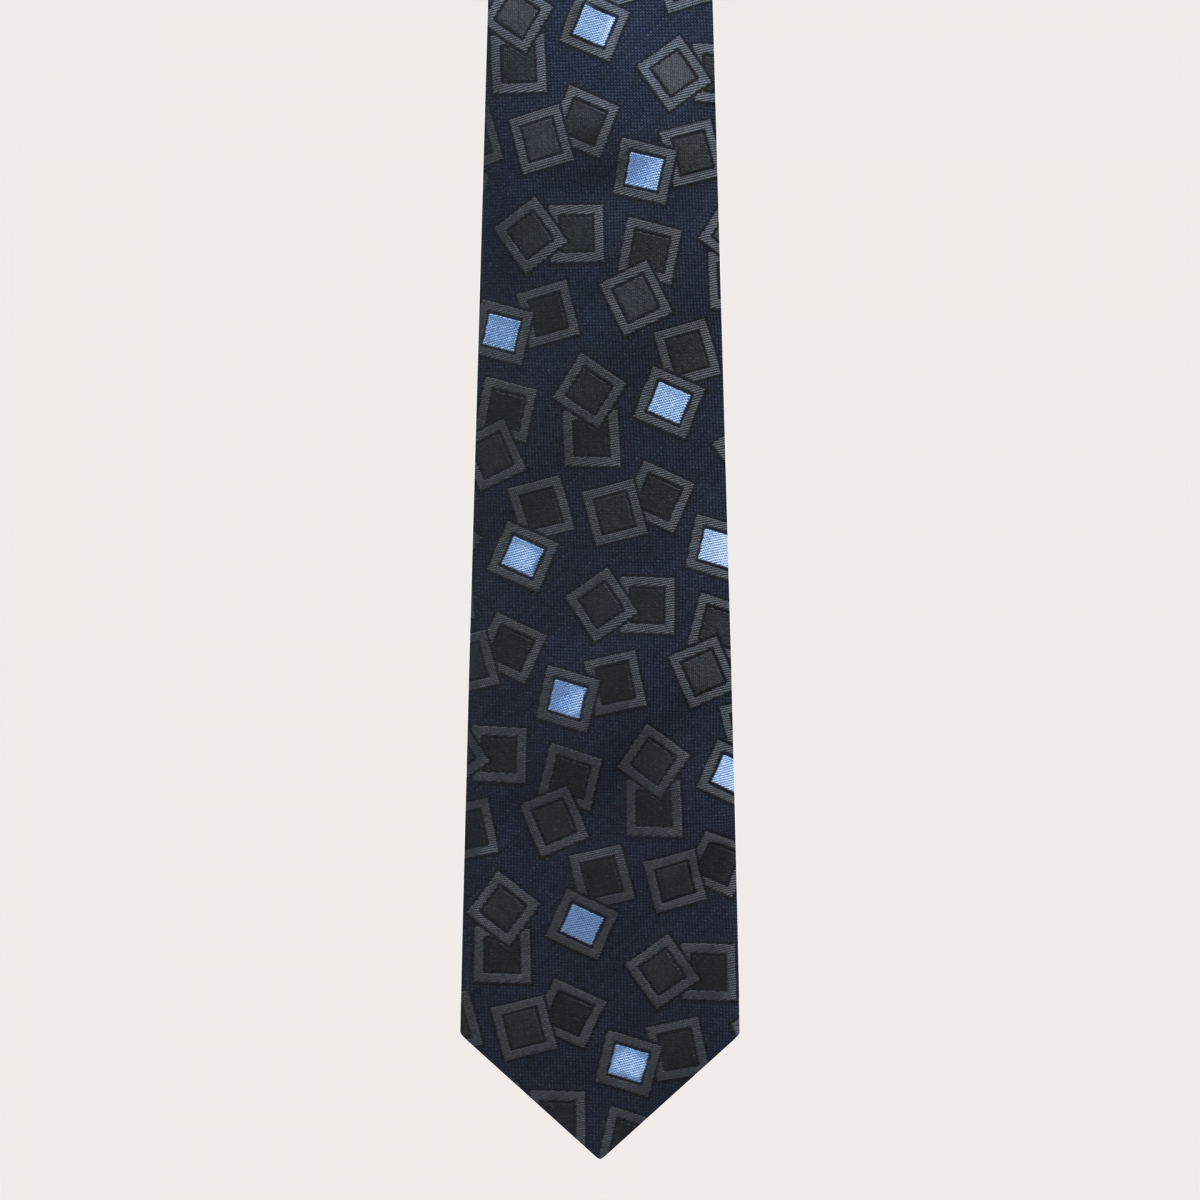 Abgestimmte Hosenträger und Krawatte aus Seide, marineblau mit anthrazitfarbenem und hellblauem Muster